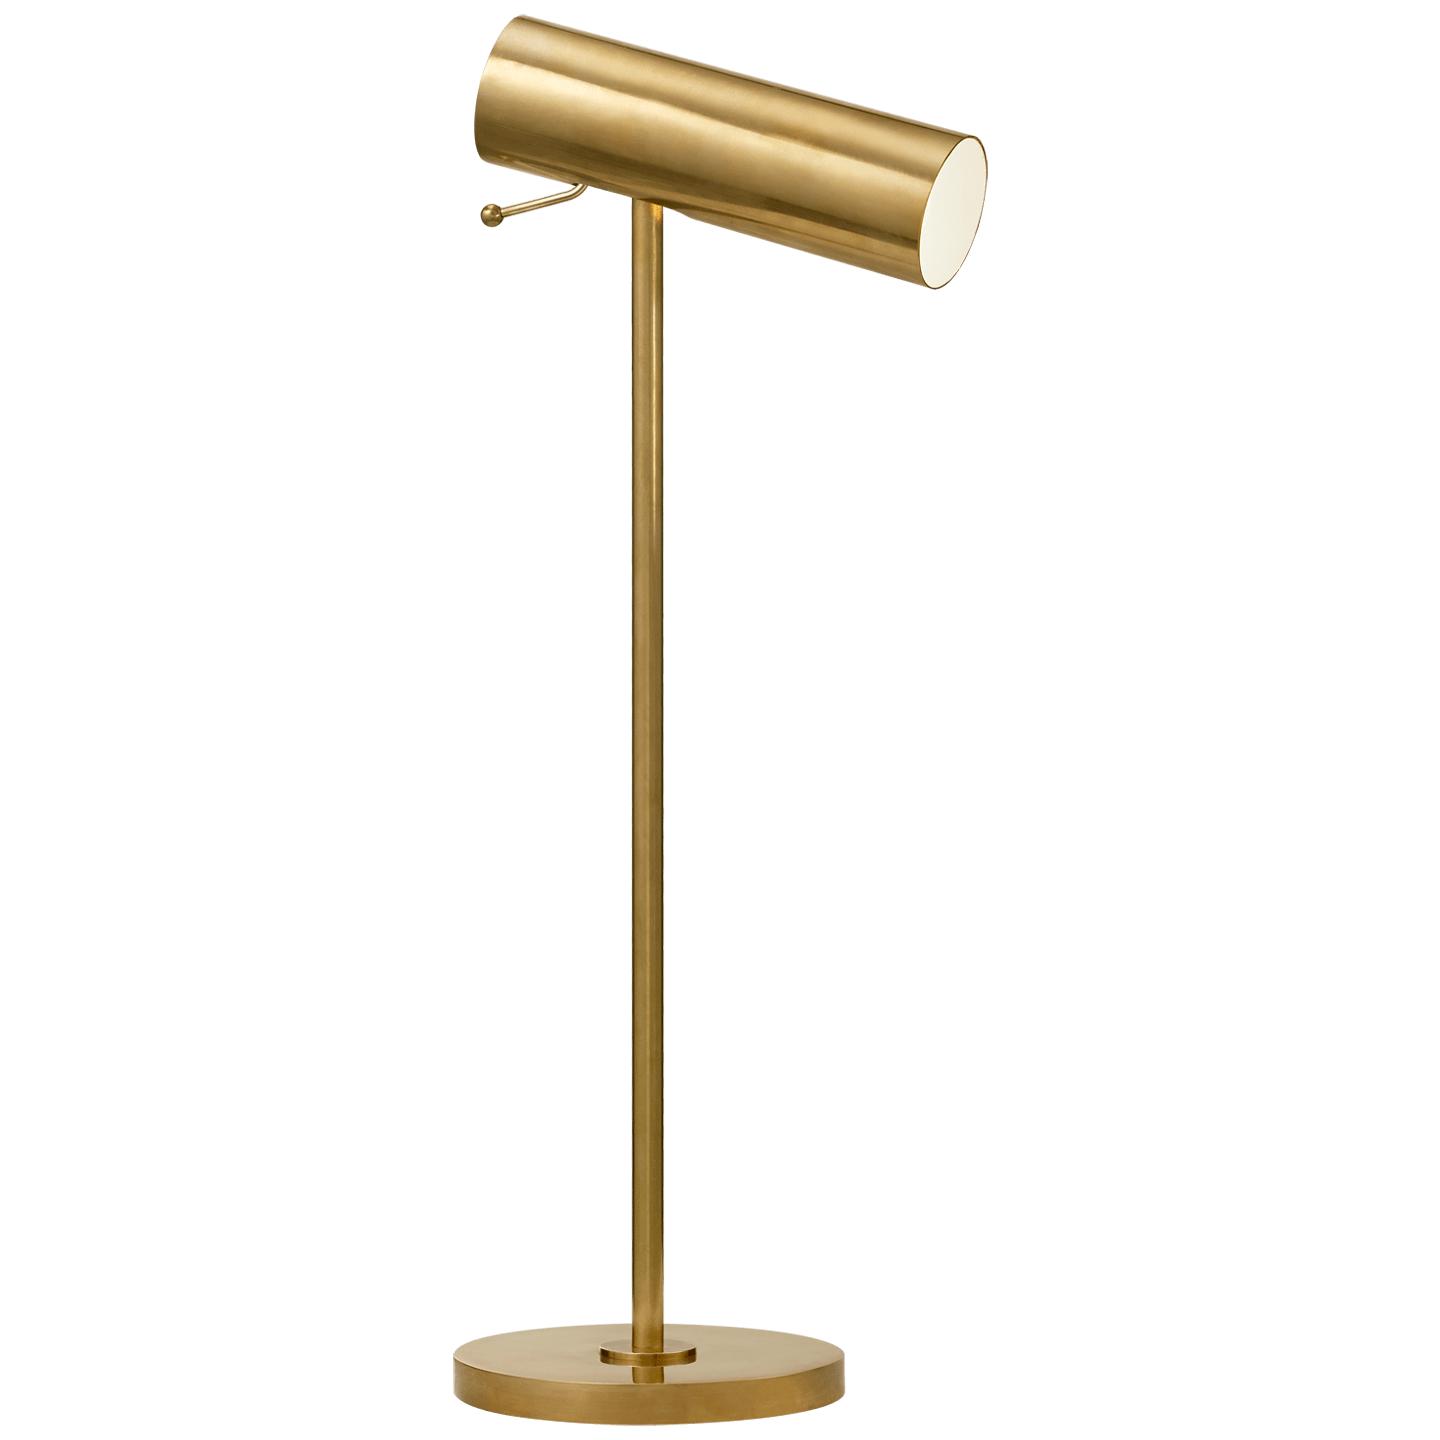 Купить Настольная лампа Lancelot Pivoting Desk Lamp в интернет-магазине roooms.ru